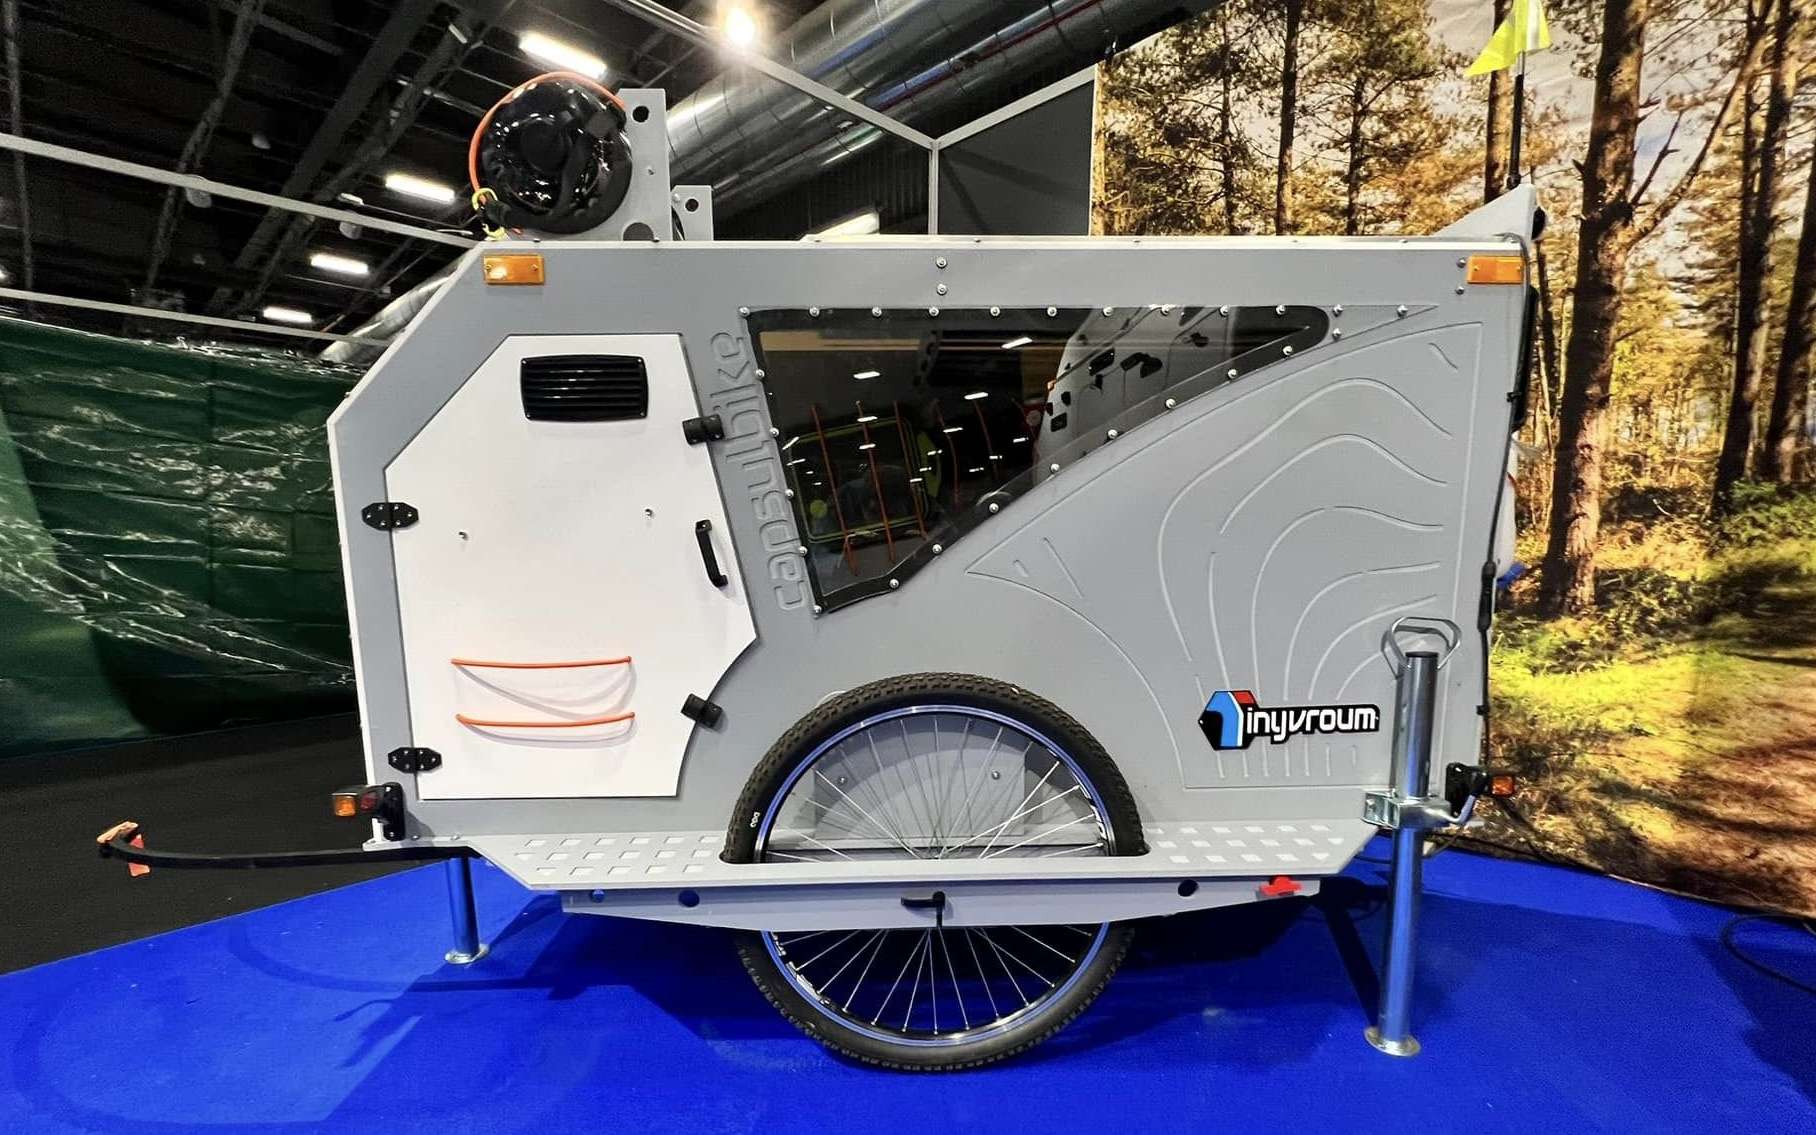 Une ingénieuse caravane pour vélo toute équipée, y compris de WC-douches